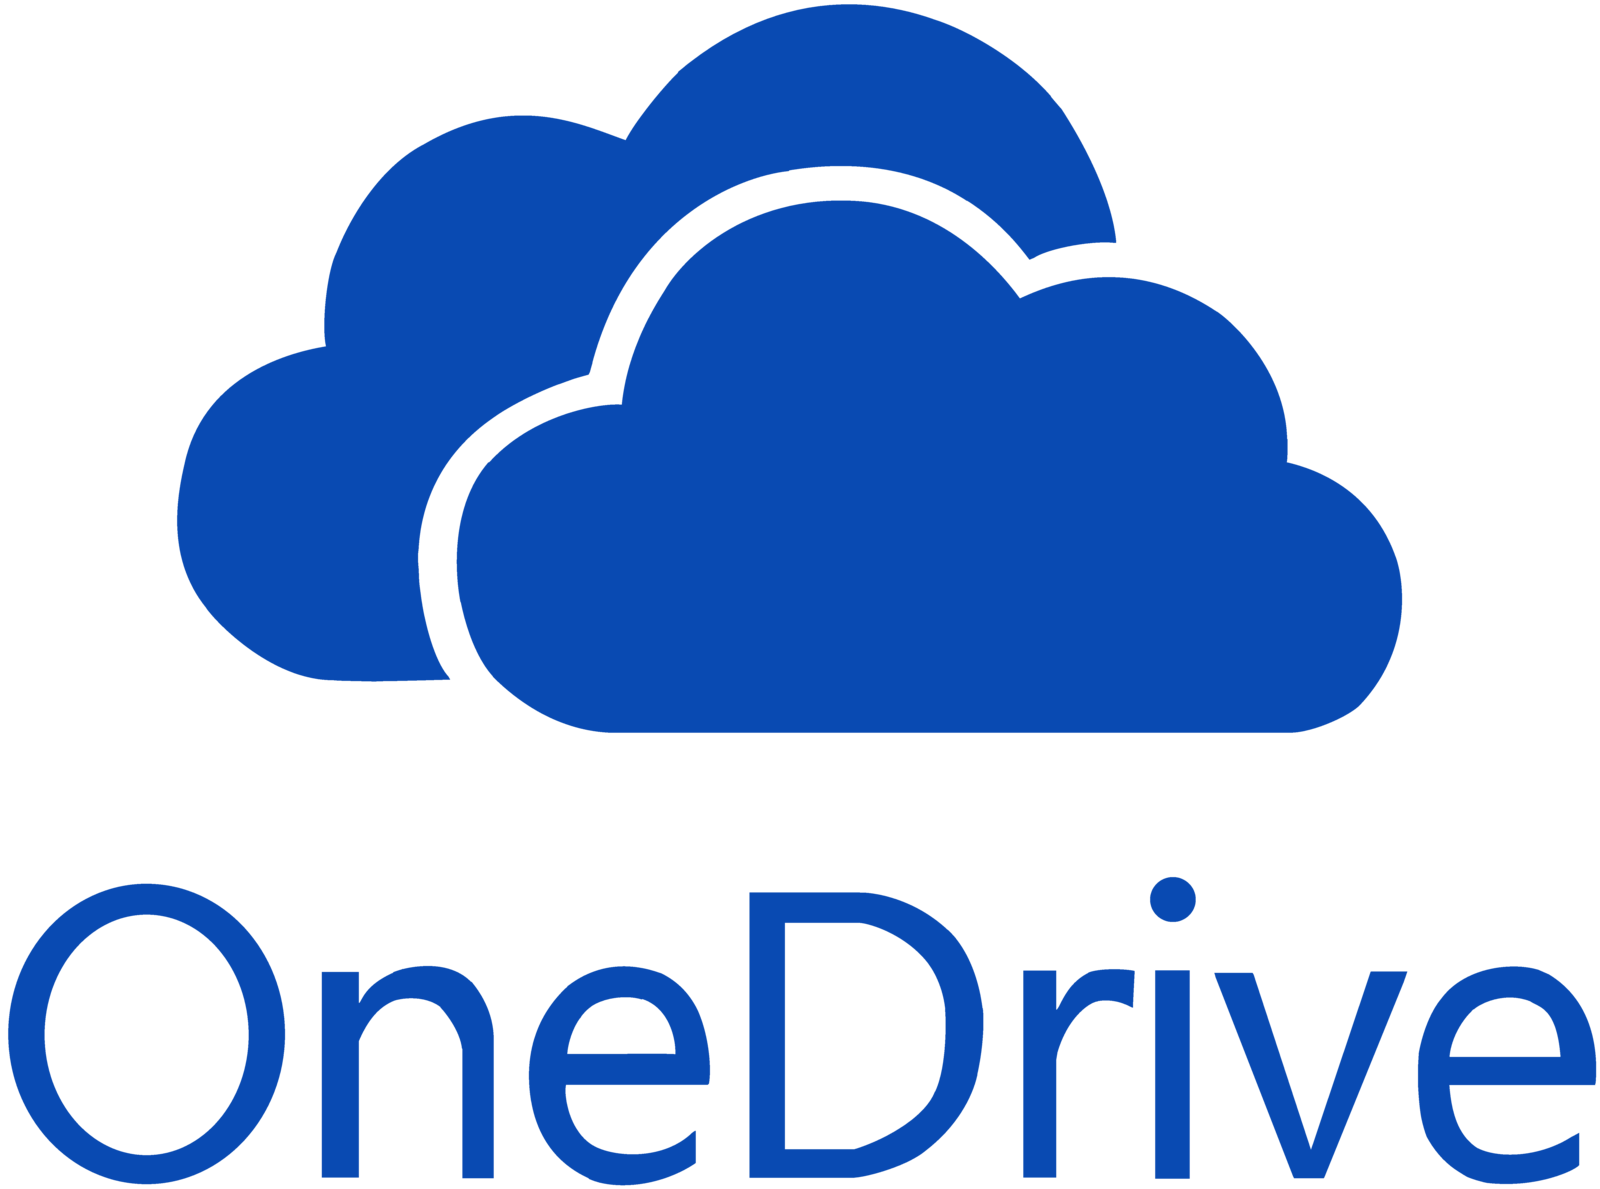 Microsoft OneDrive SkyDrive для Windows сохраняет файлы пользователя в облачном хранилище, сервис работает через программу-клиент или веб-интерфейс